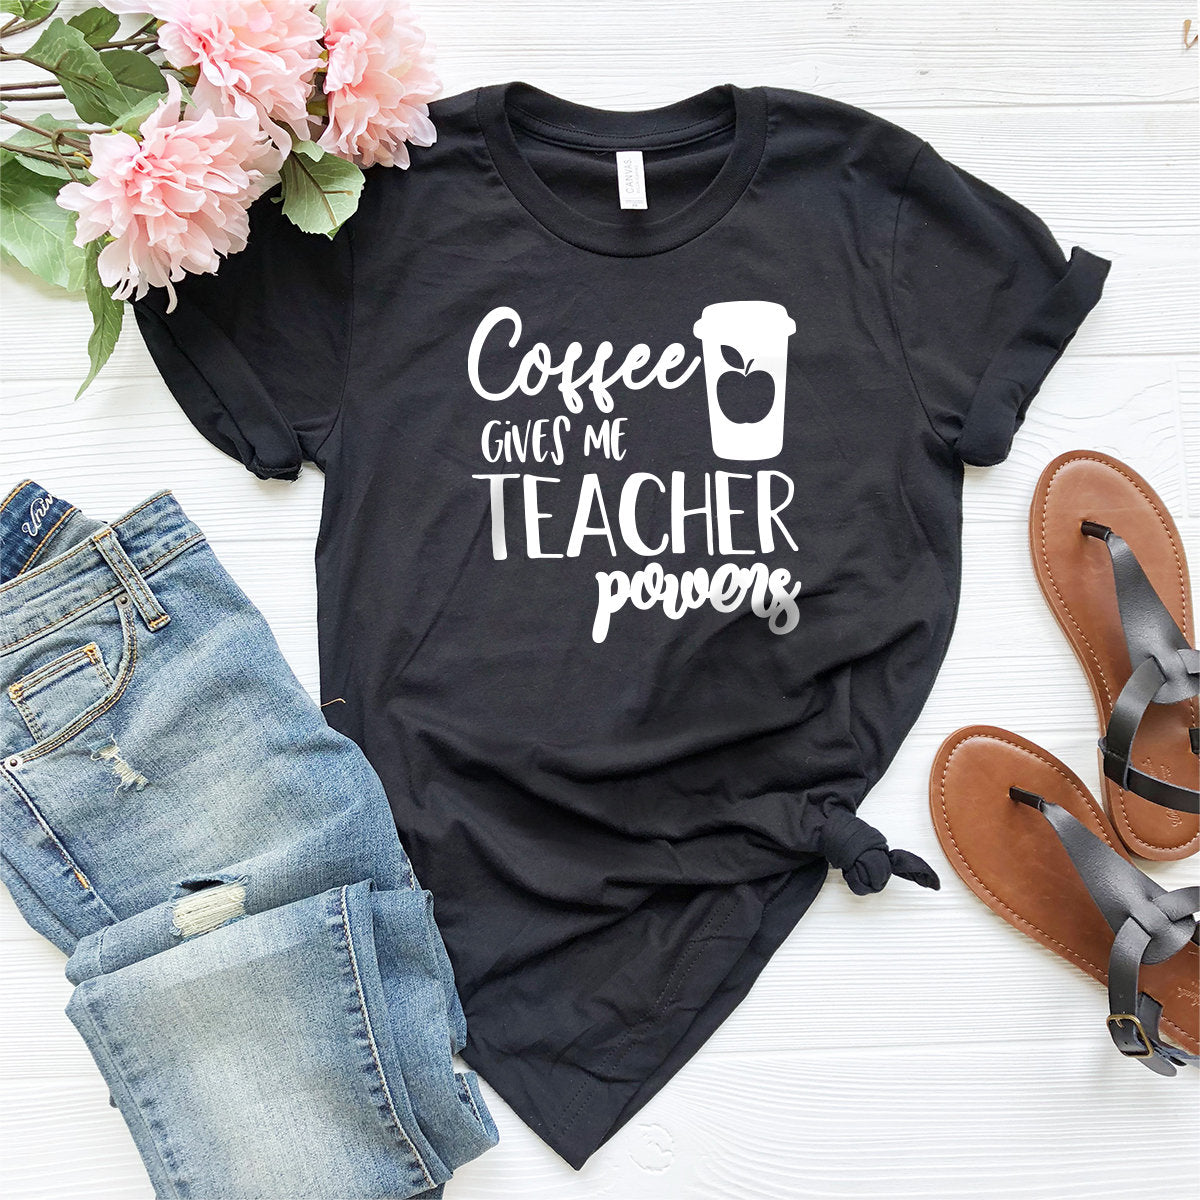 Teacher T-Shirt, Funny Teacher Shirt, Teacher Life Shirt, Gift For Best Teacher, Coffee Gives Me Teacher Powers Shirt, Teacher Gifts - Fastdeliverytees.com